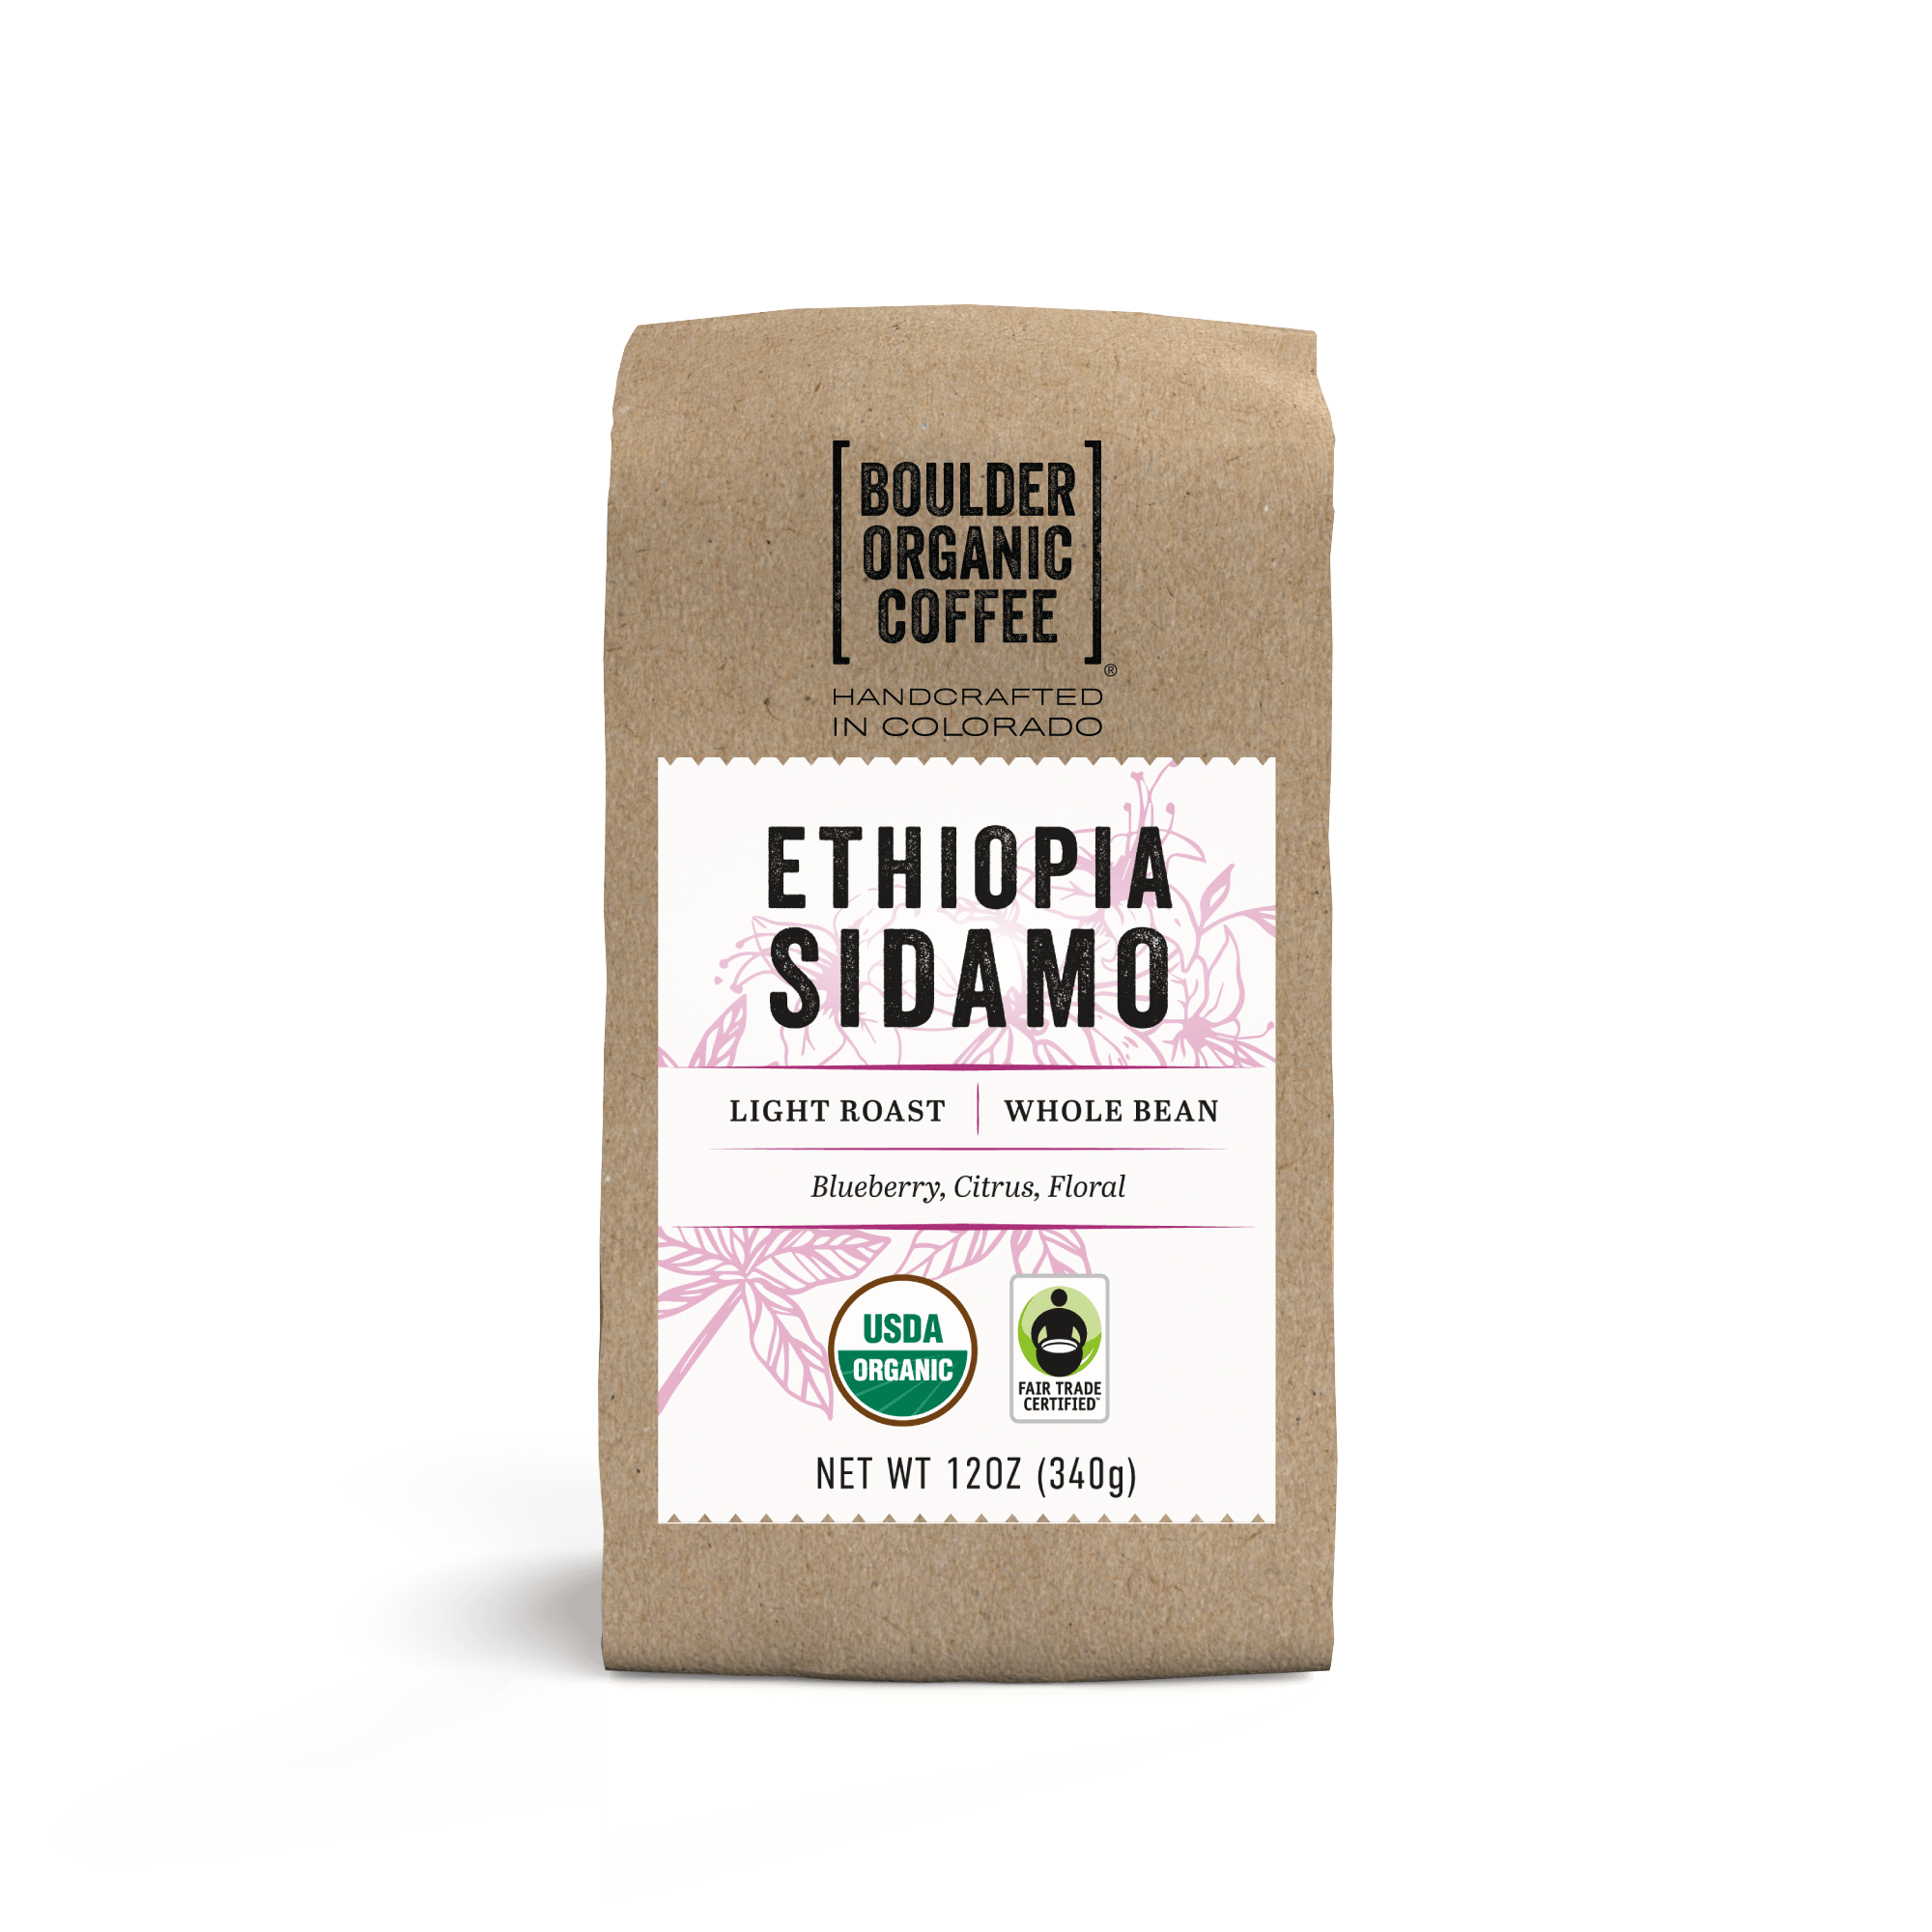 Bio Coffee, Organic Coffee, Biologic Coffee, Fair Trade